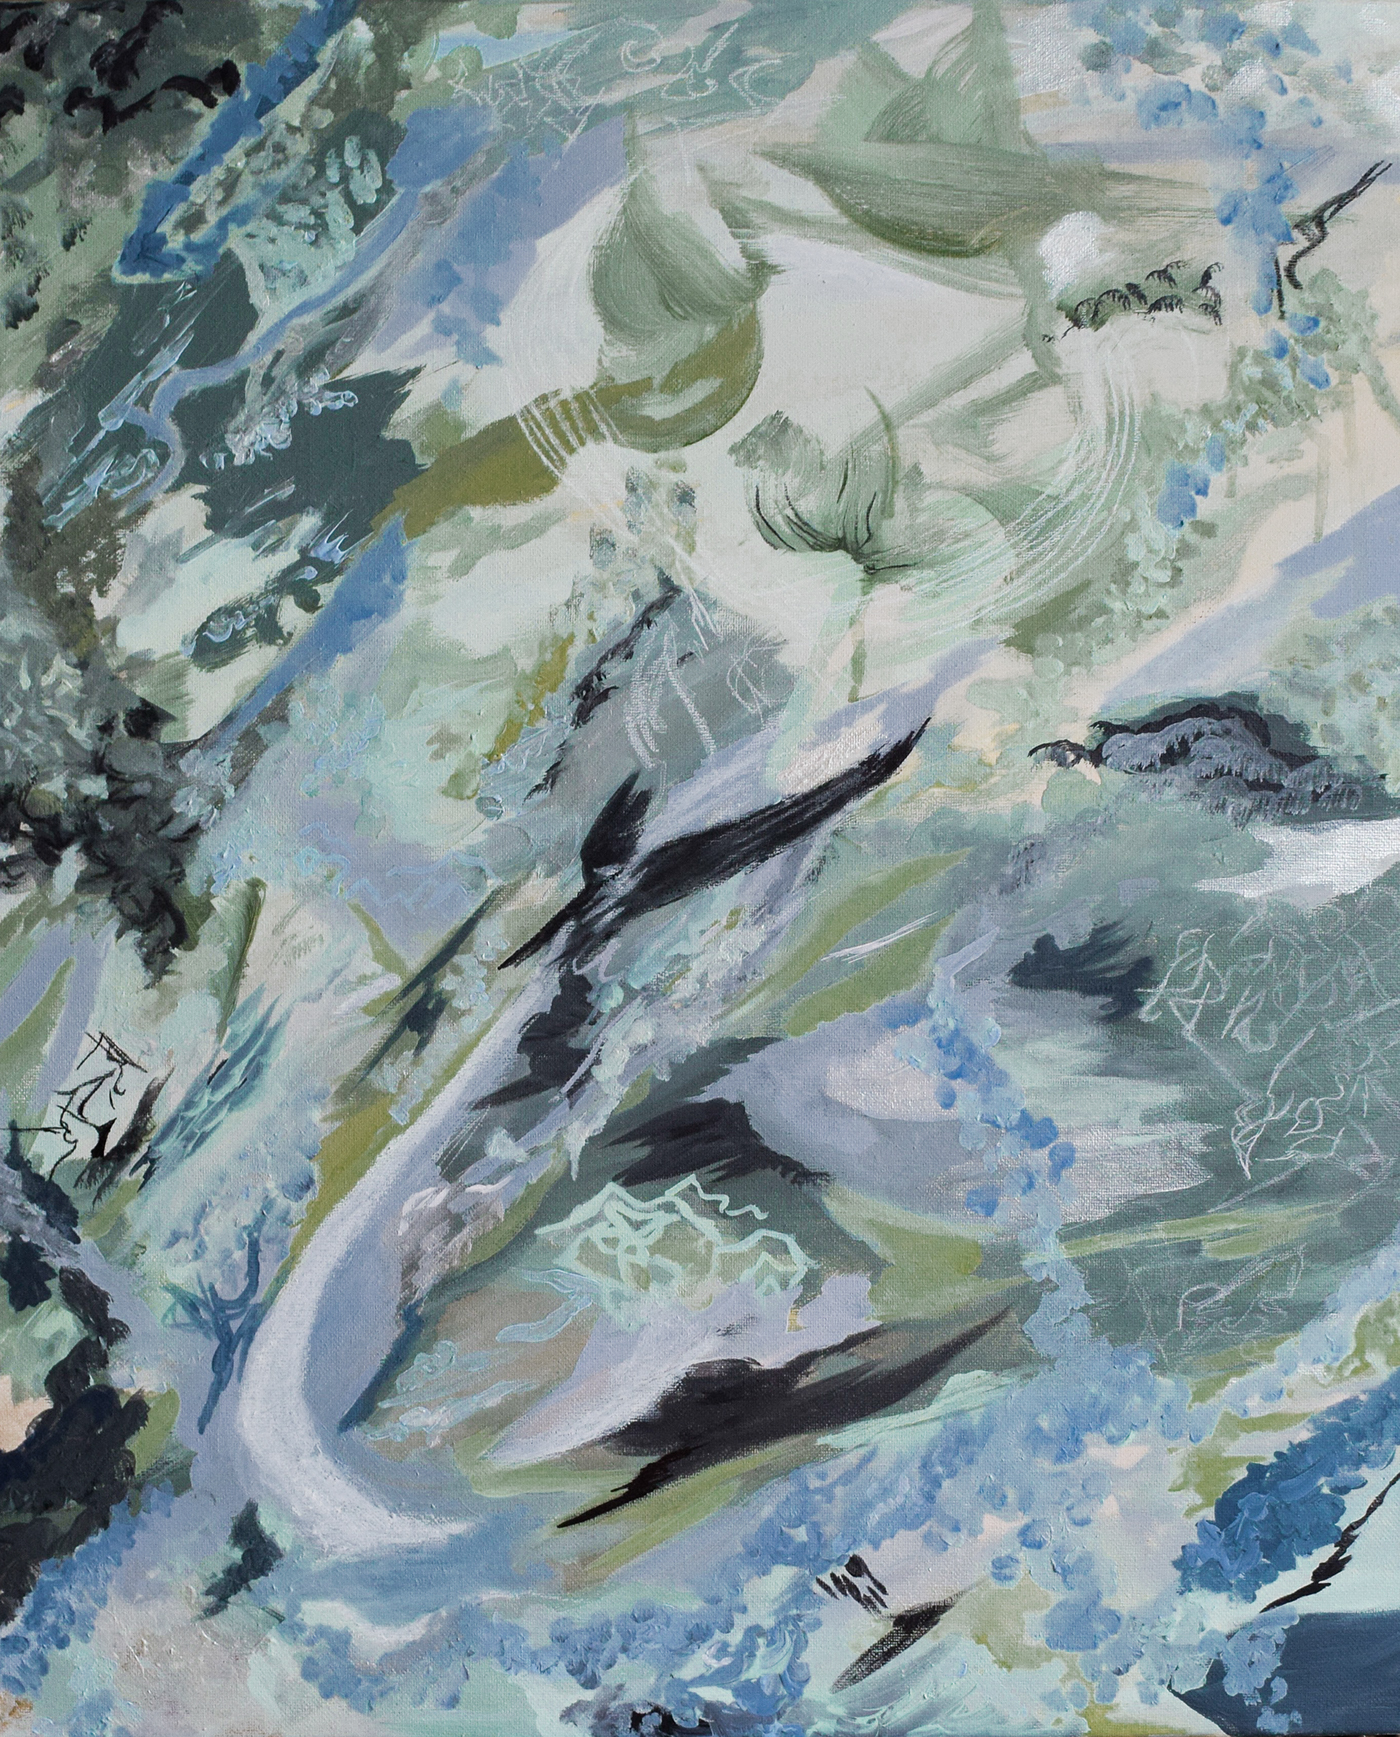 abstract Expressionism surreal aqua sea Ocean mark making